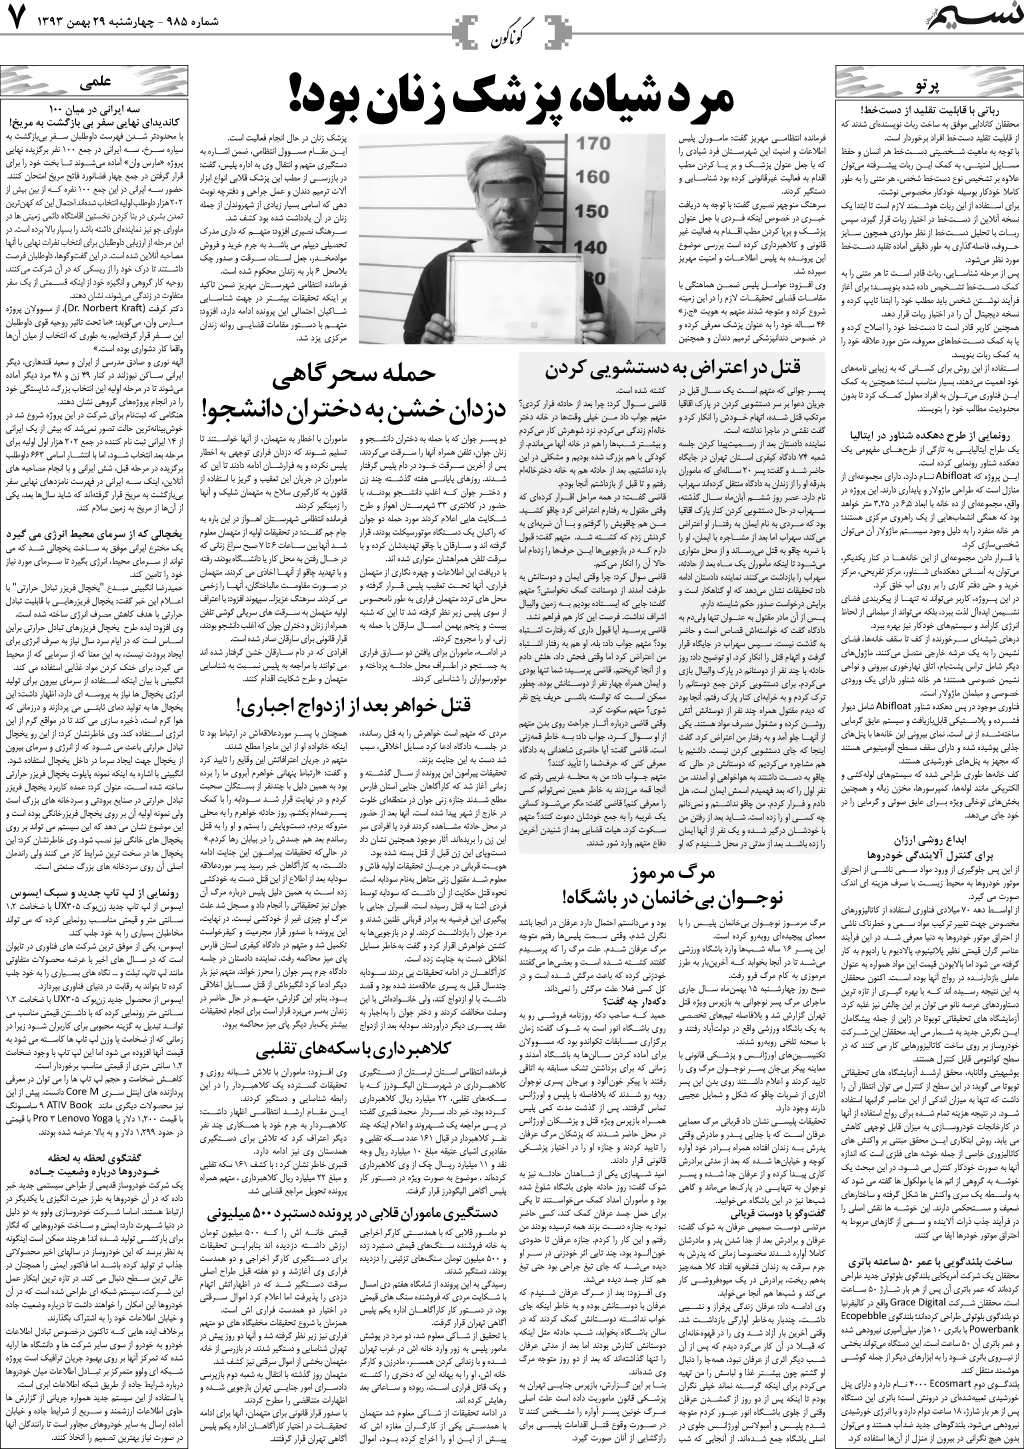 صفحه گوناگون روزنامه نسیم شماره 985